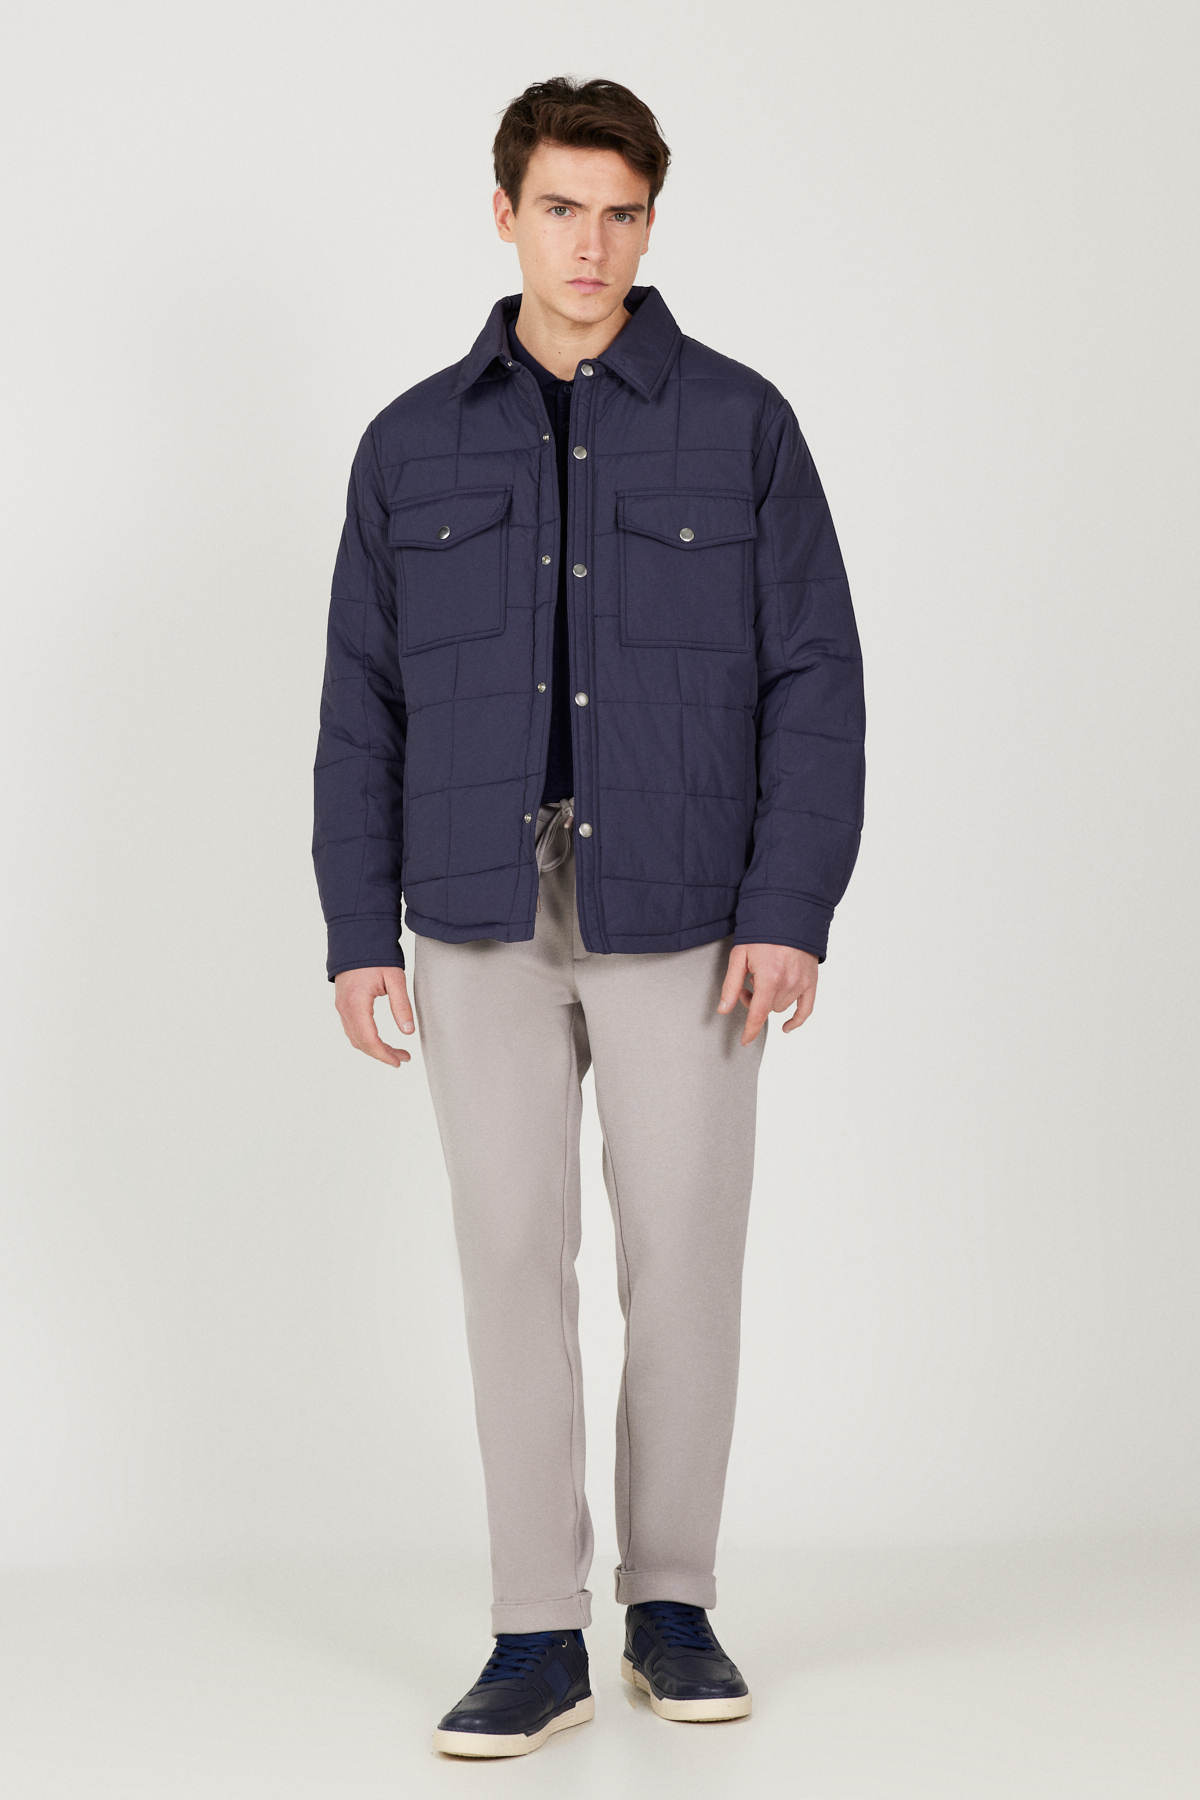 ALTINYILDIZ CLASSICS Men's Navy Blue Standard Fit Regular Fit Shirt Collar Coat